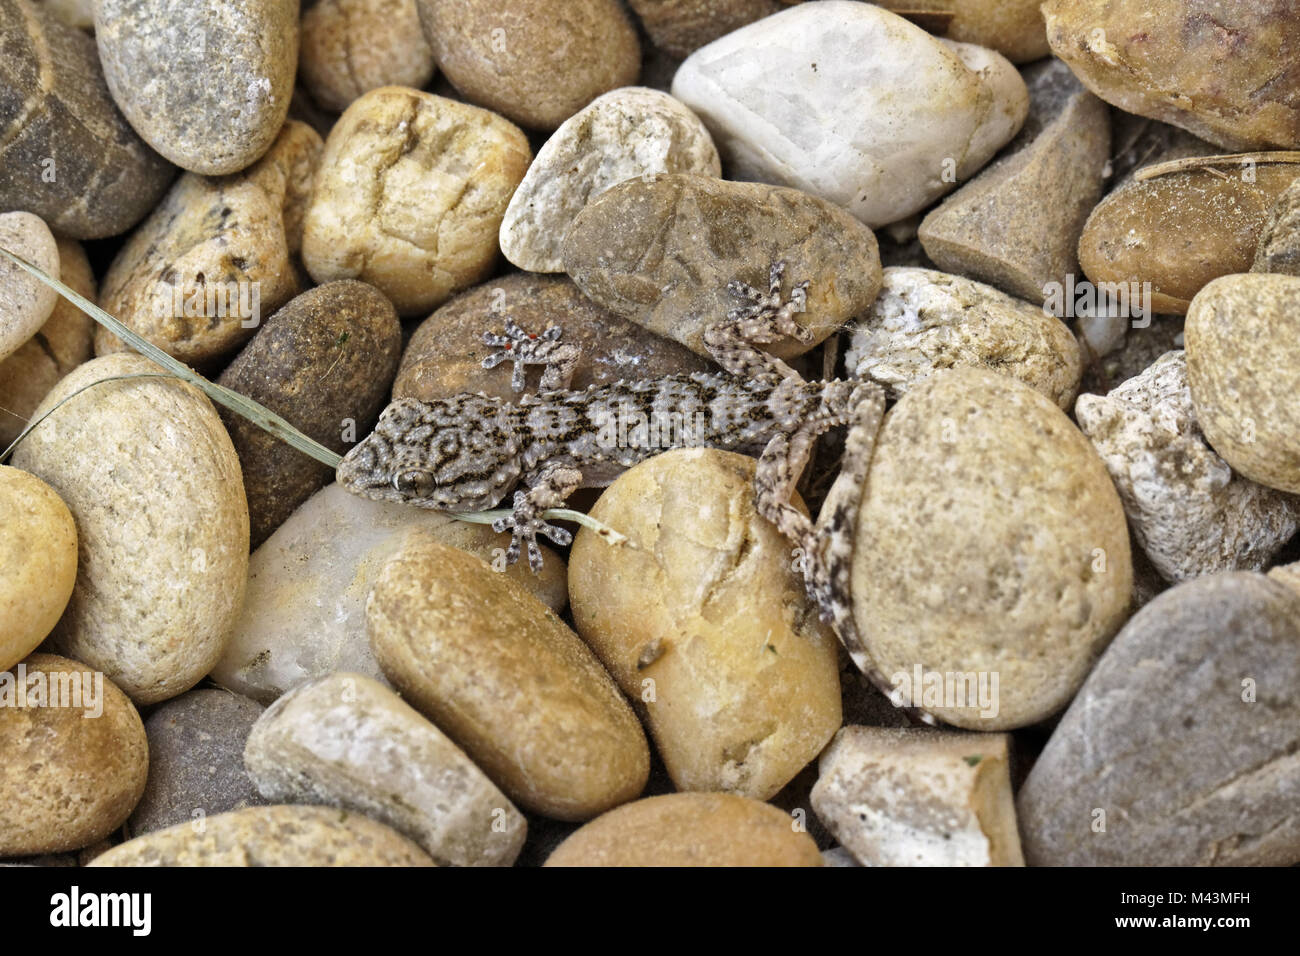 Hemidactylus turcicus, Türkische Gecko, Gecko Stockfoto